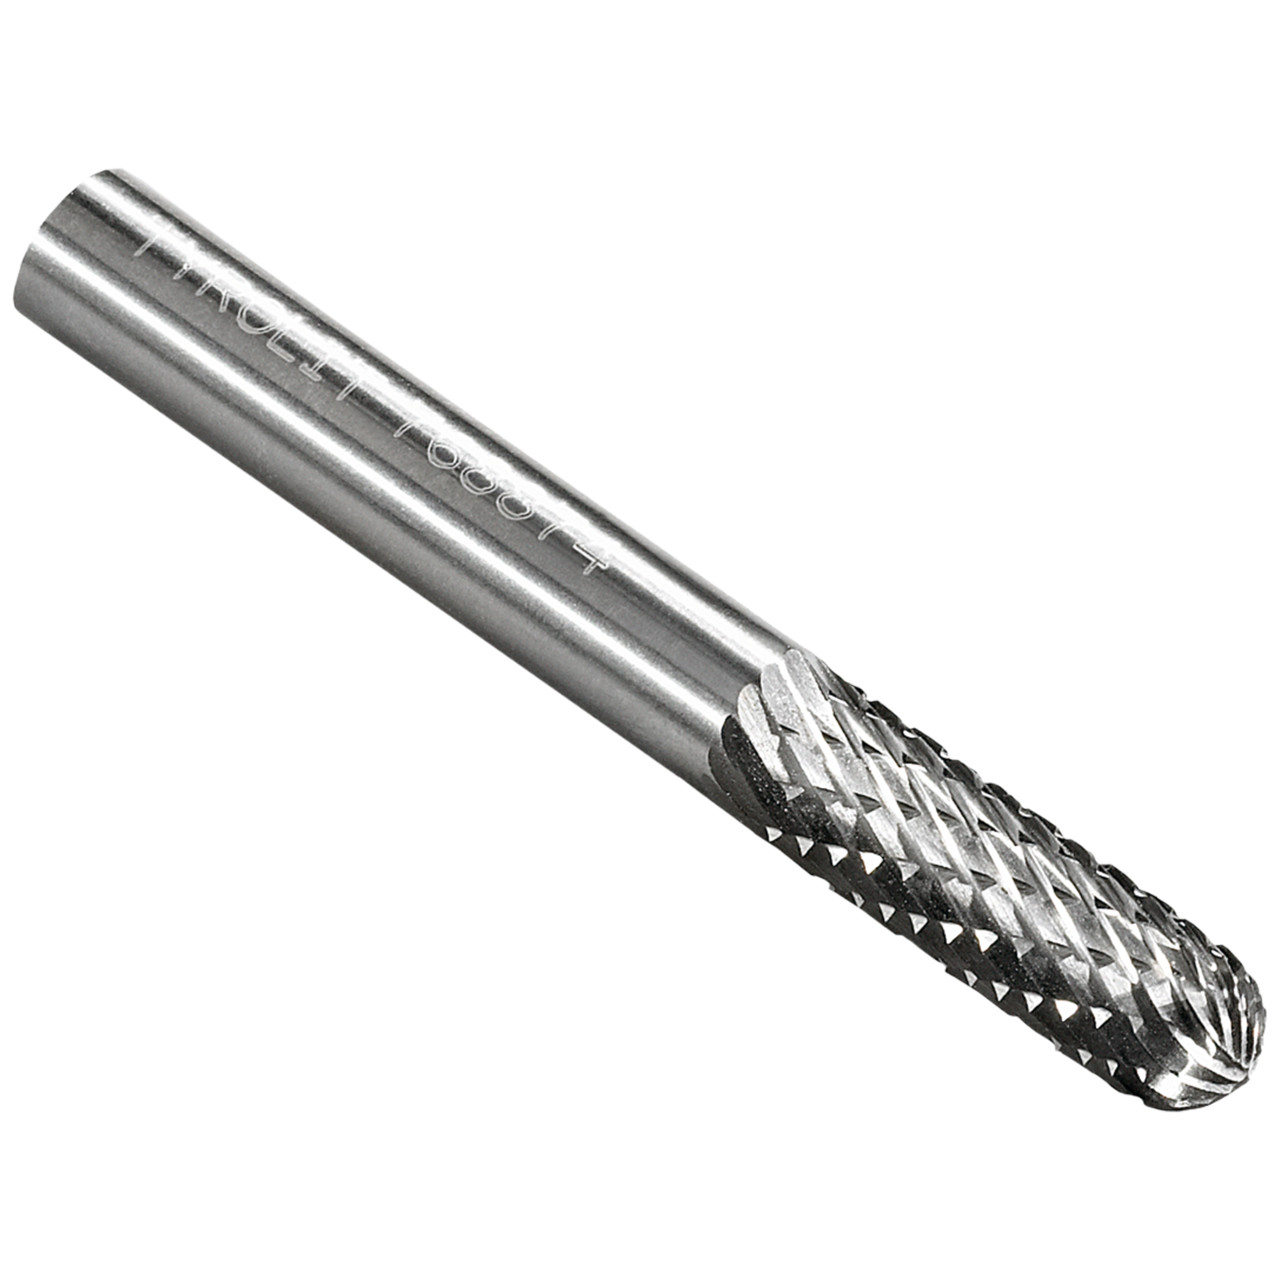 TYROLIT Hartmetallfräser DxT-SxL 8x19-6x65 Für Gusseisen, Stahl und Edelstahl, Form: 52WRC - Walzenrund, Art. 768878